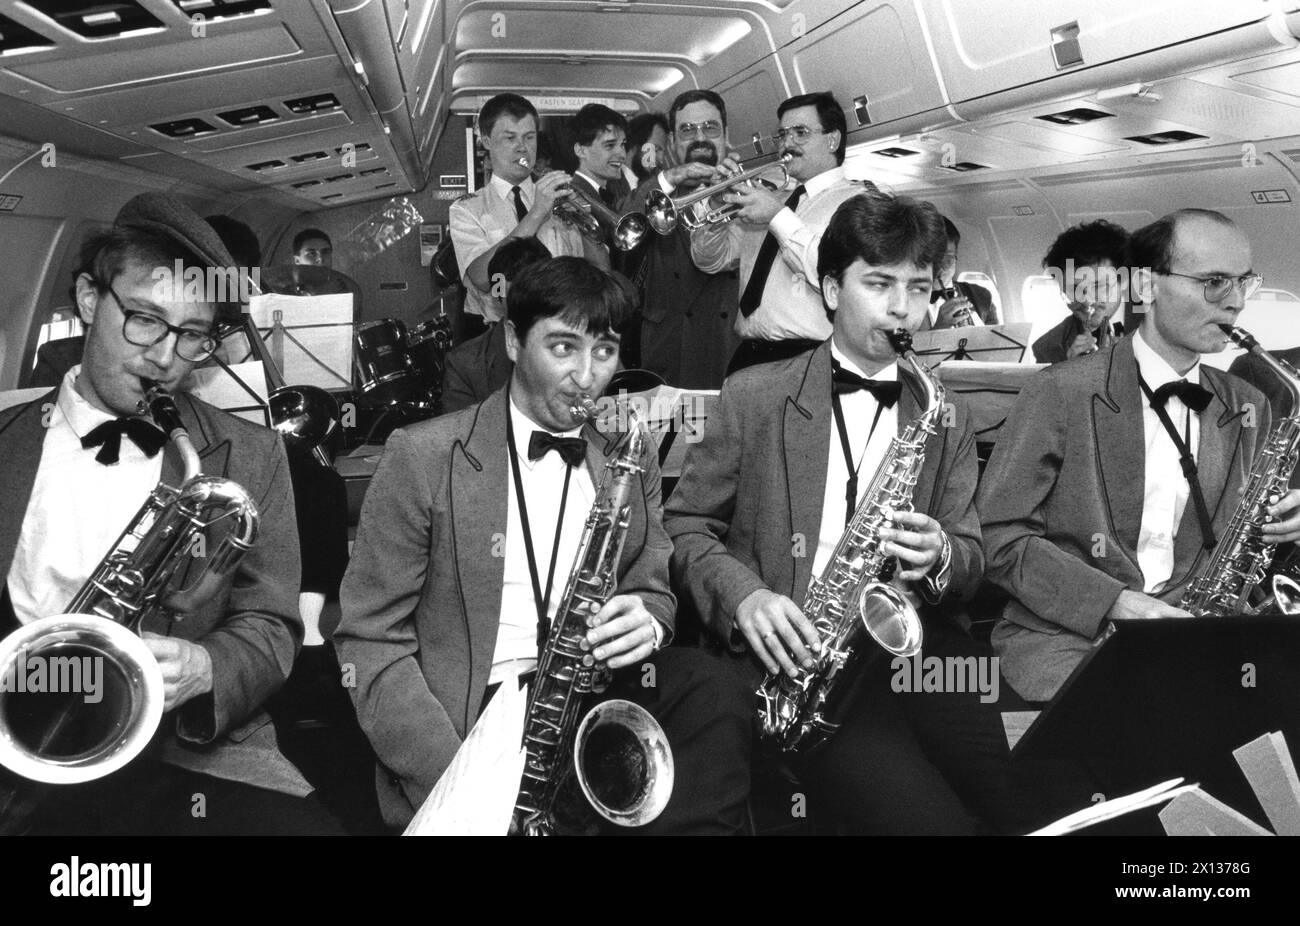 29 novembre 1990 : le 'Alpha Big Band' a présenté son nouveau CD à bord d'un AUA DC-9. - 19901129 PD0004 - Rechteinfo : droits gérés (RM) Banque D'Images